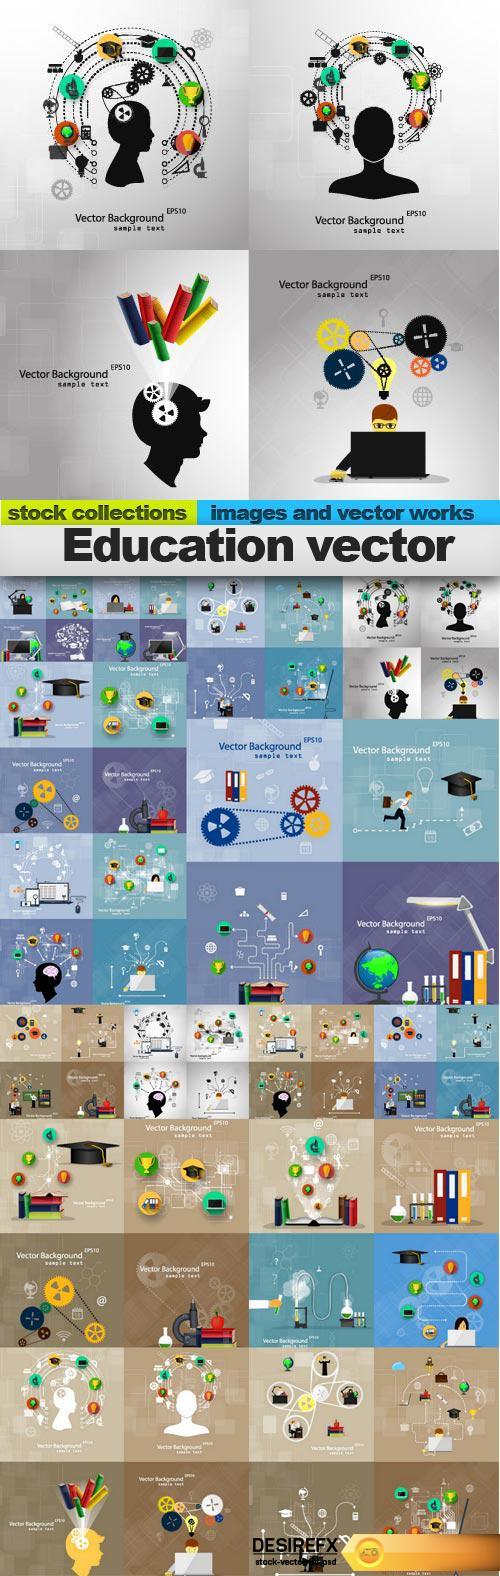 Education vector, 15 x EPS